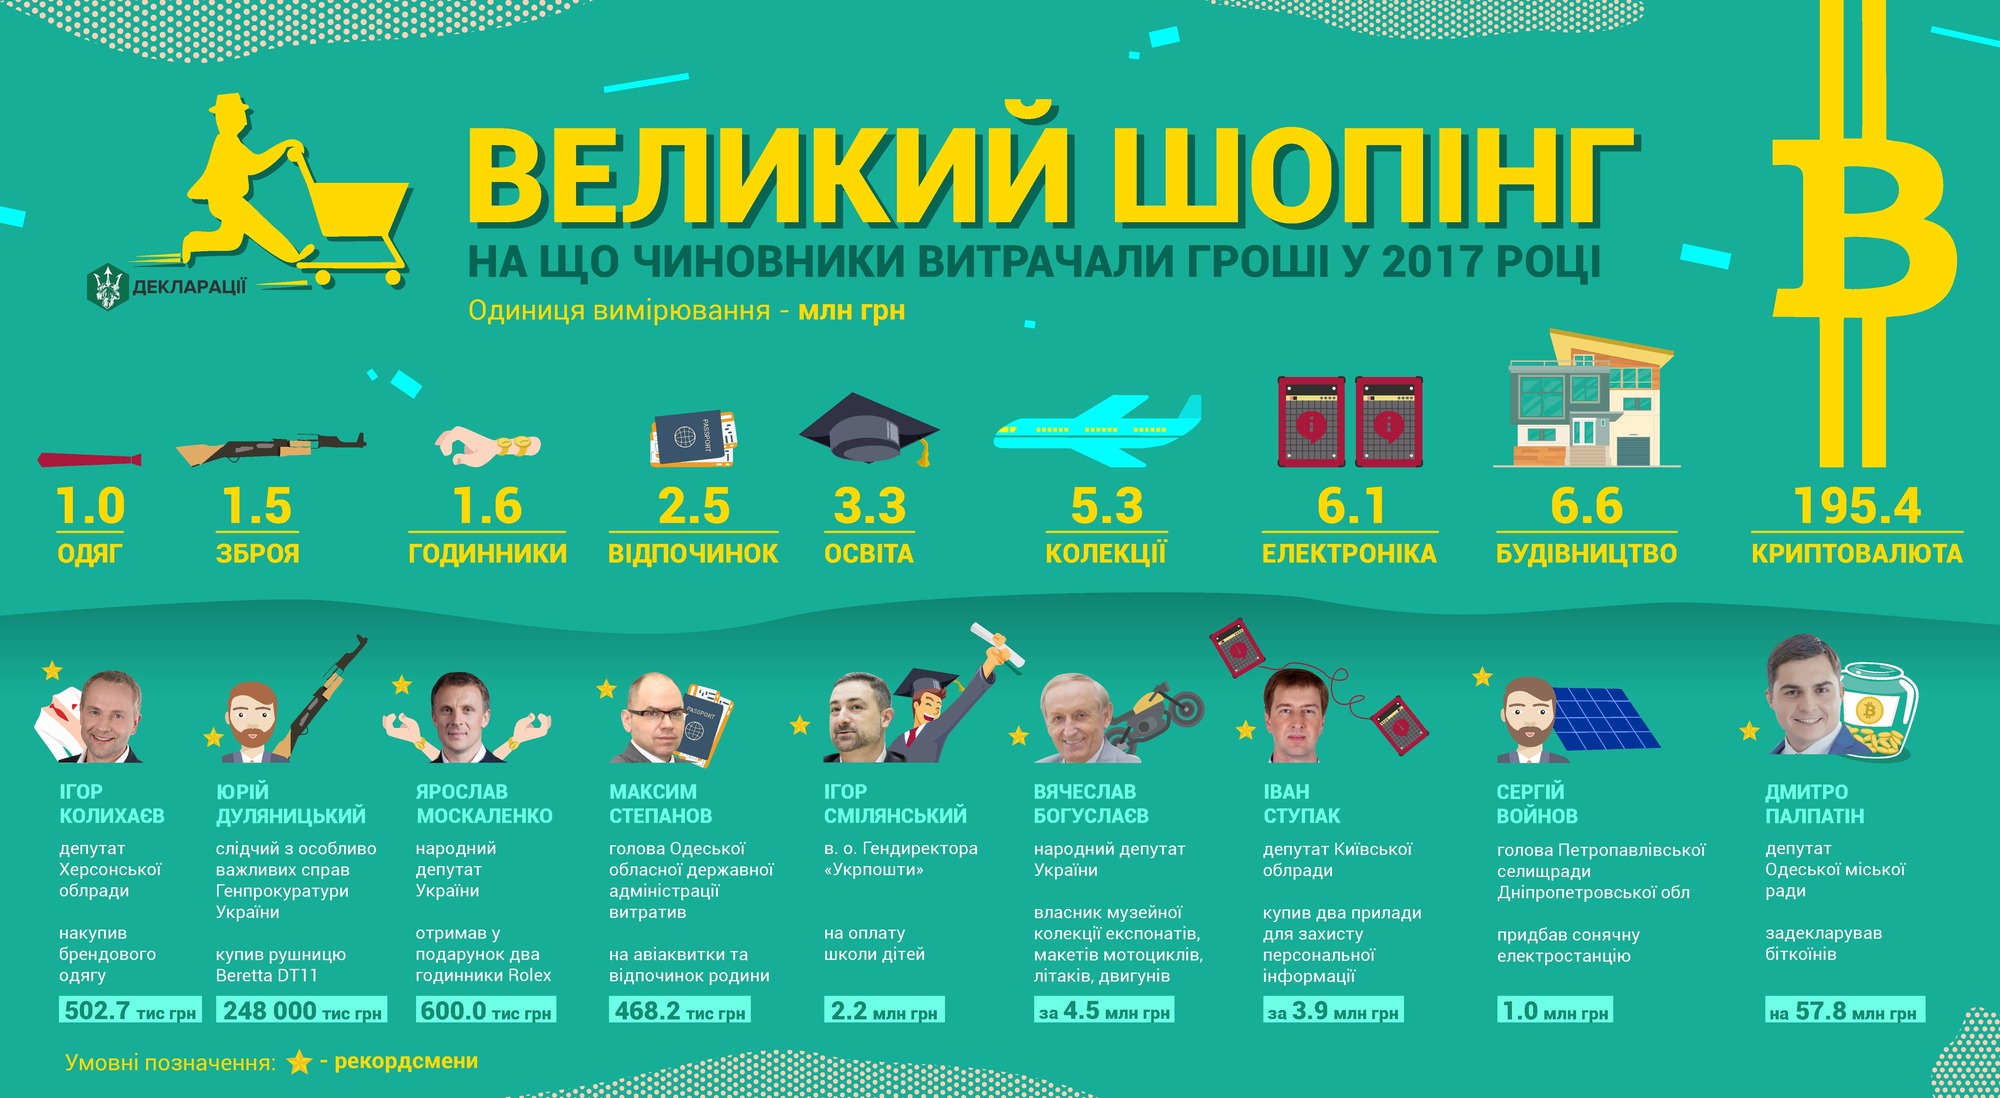 Украинские чиновники потратили на биткоин сотни миллионов